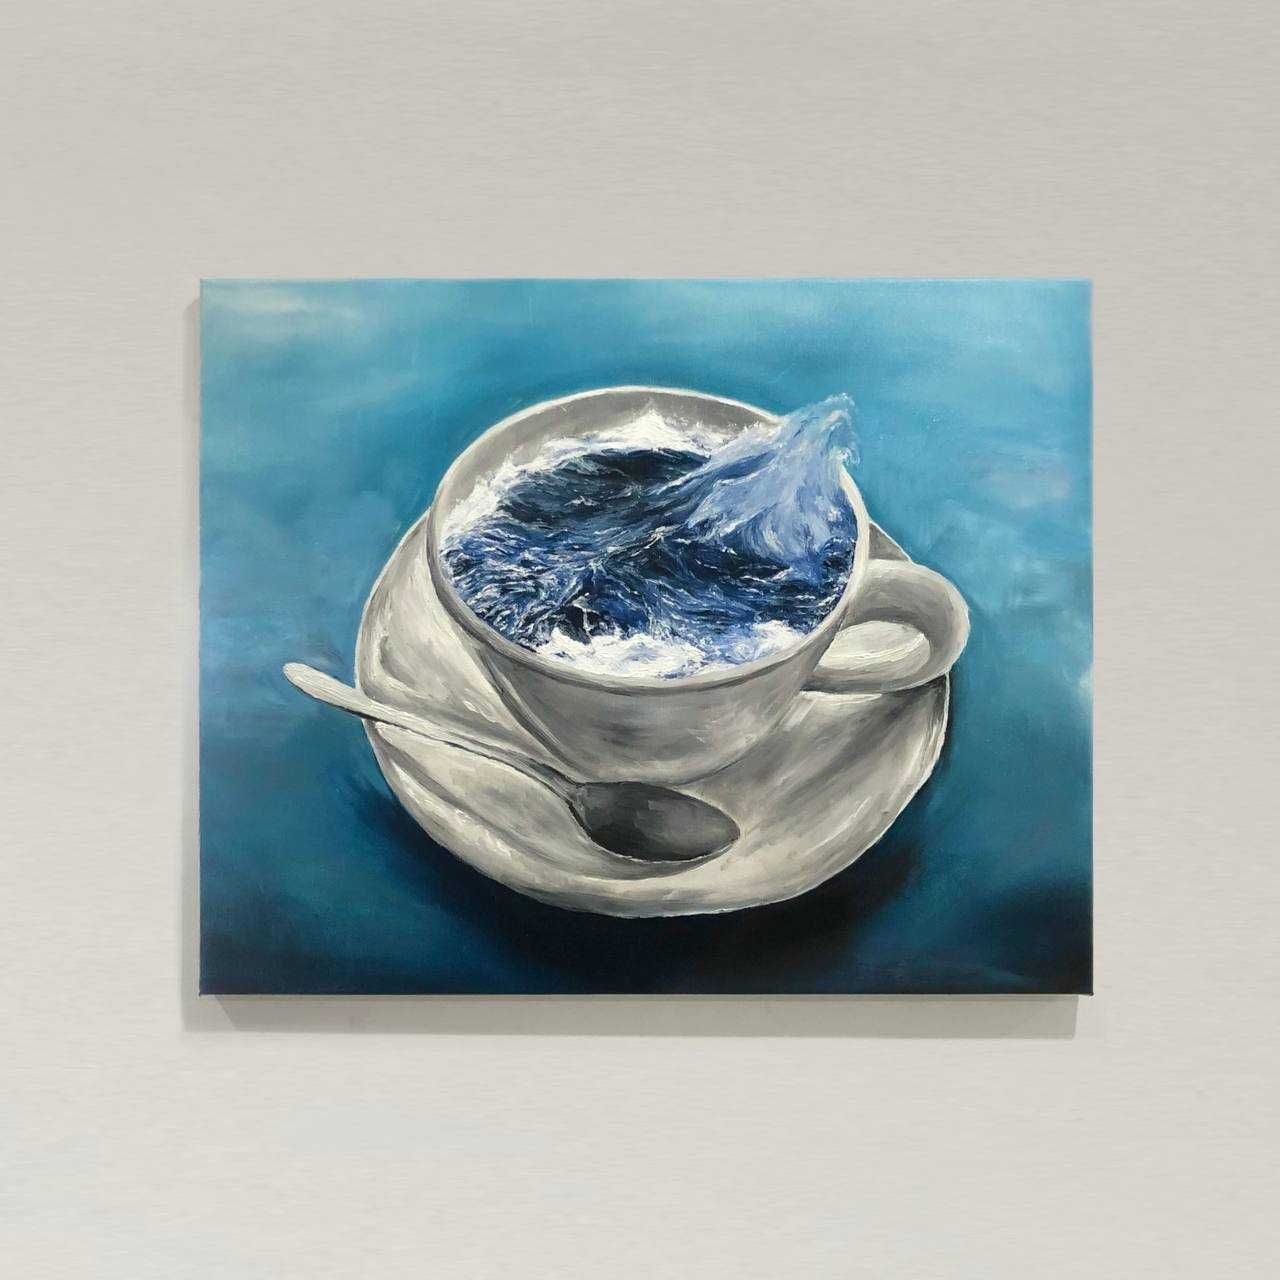 Назва картини - «Хвилі у чашці»